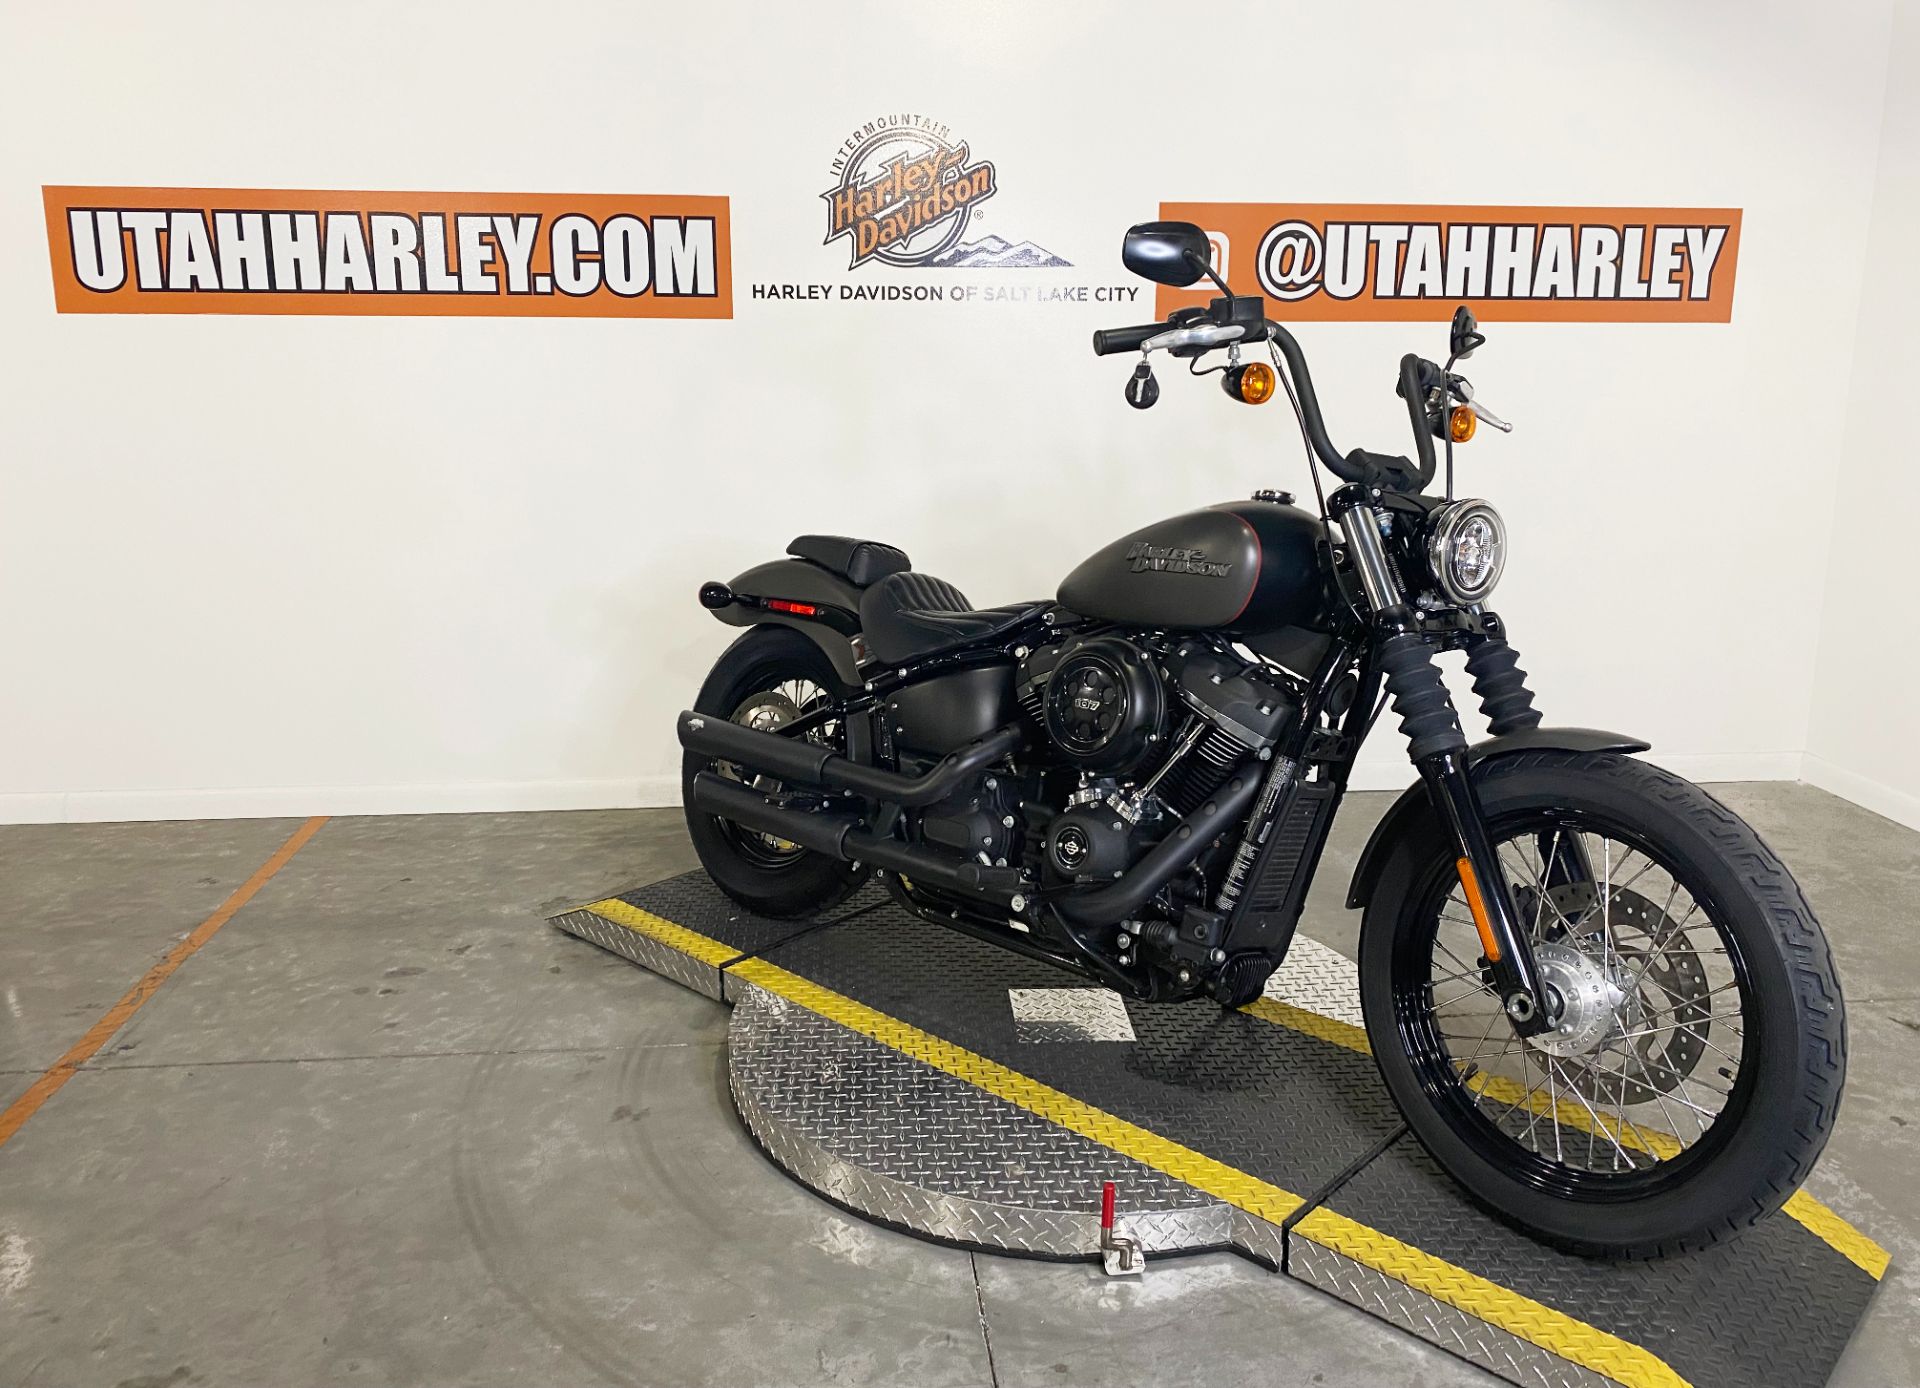 2018 Harley-Davidson Street Bob in Salt Lake City, Utah - Photo 2